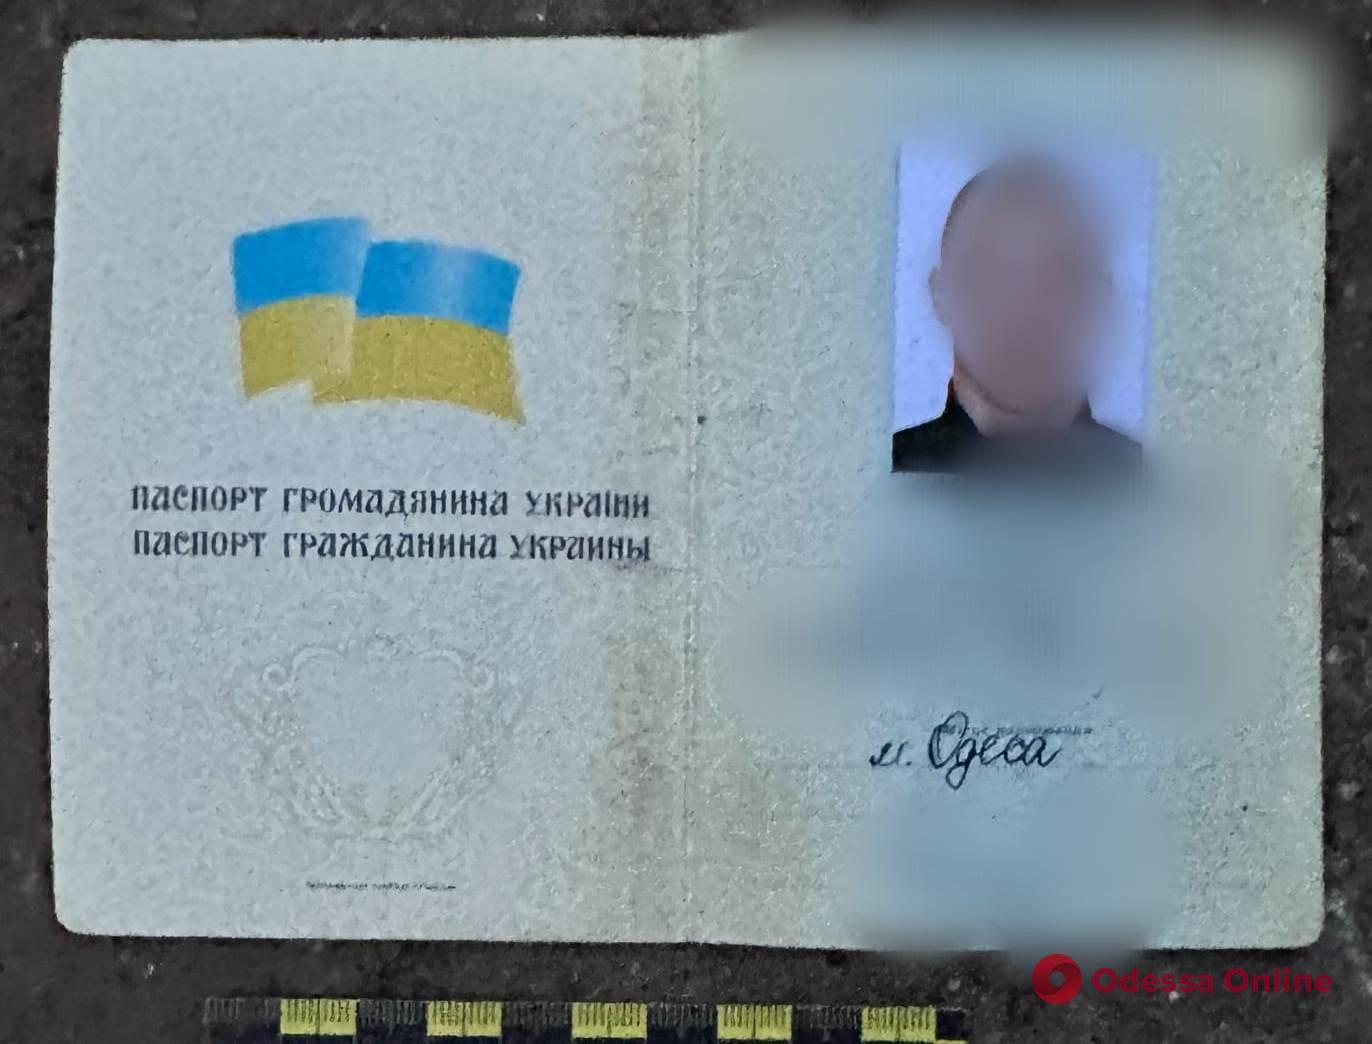 В Одесі викрили херсонця з чужим паспортом та холодною зброєю